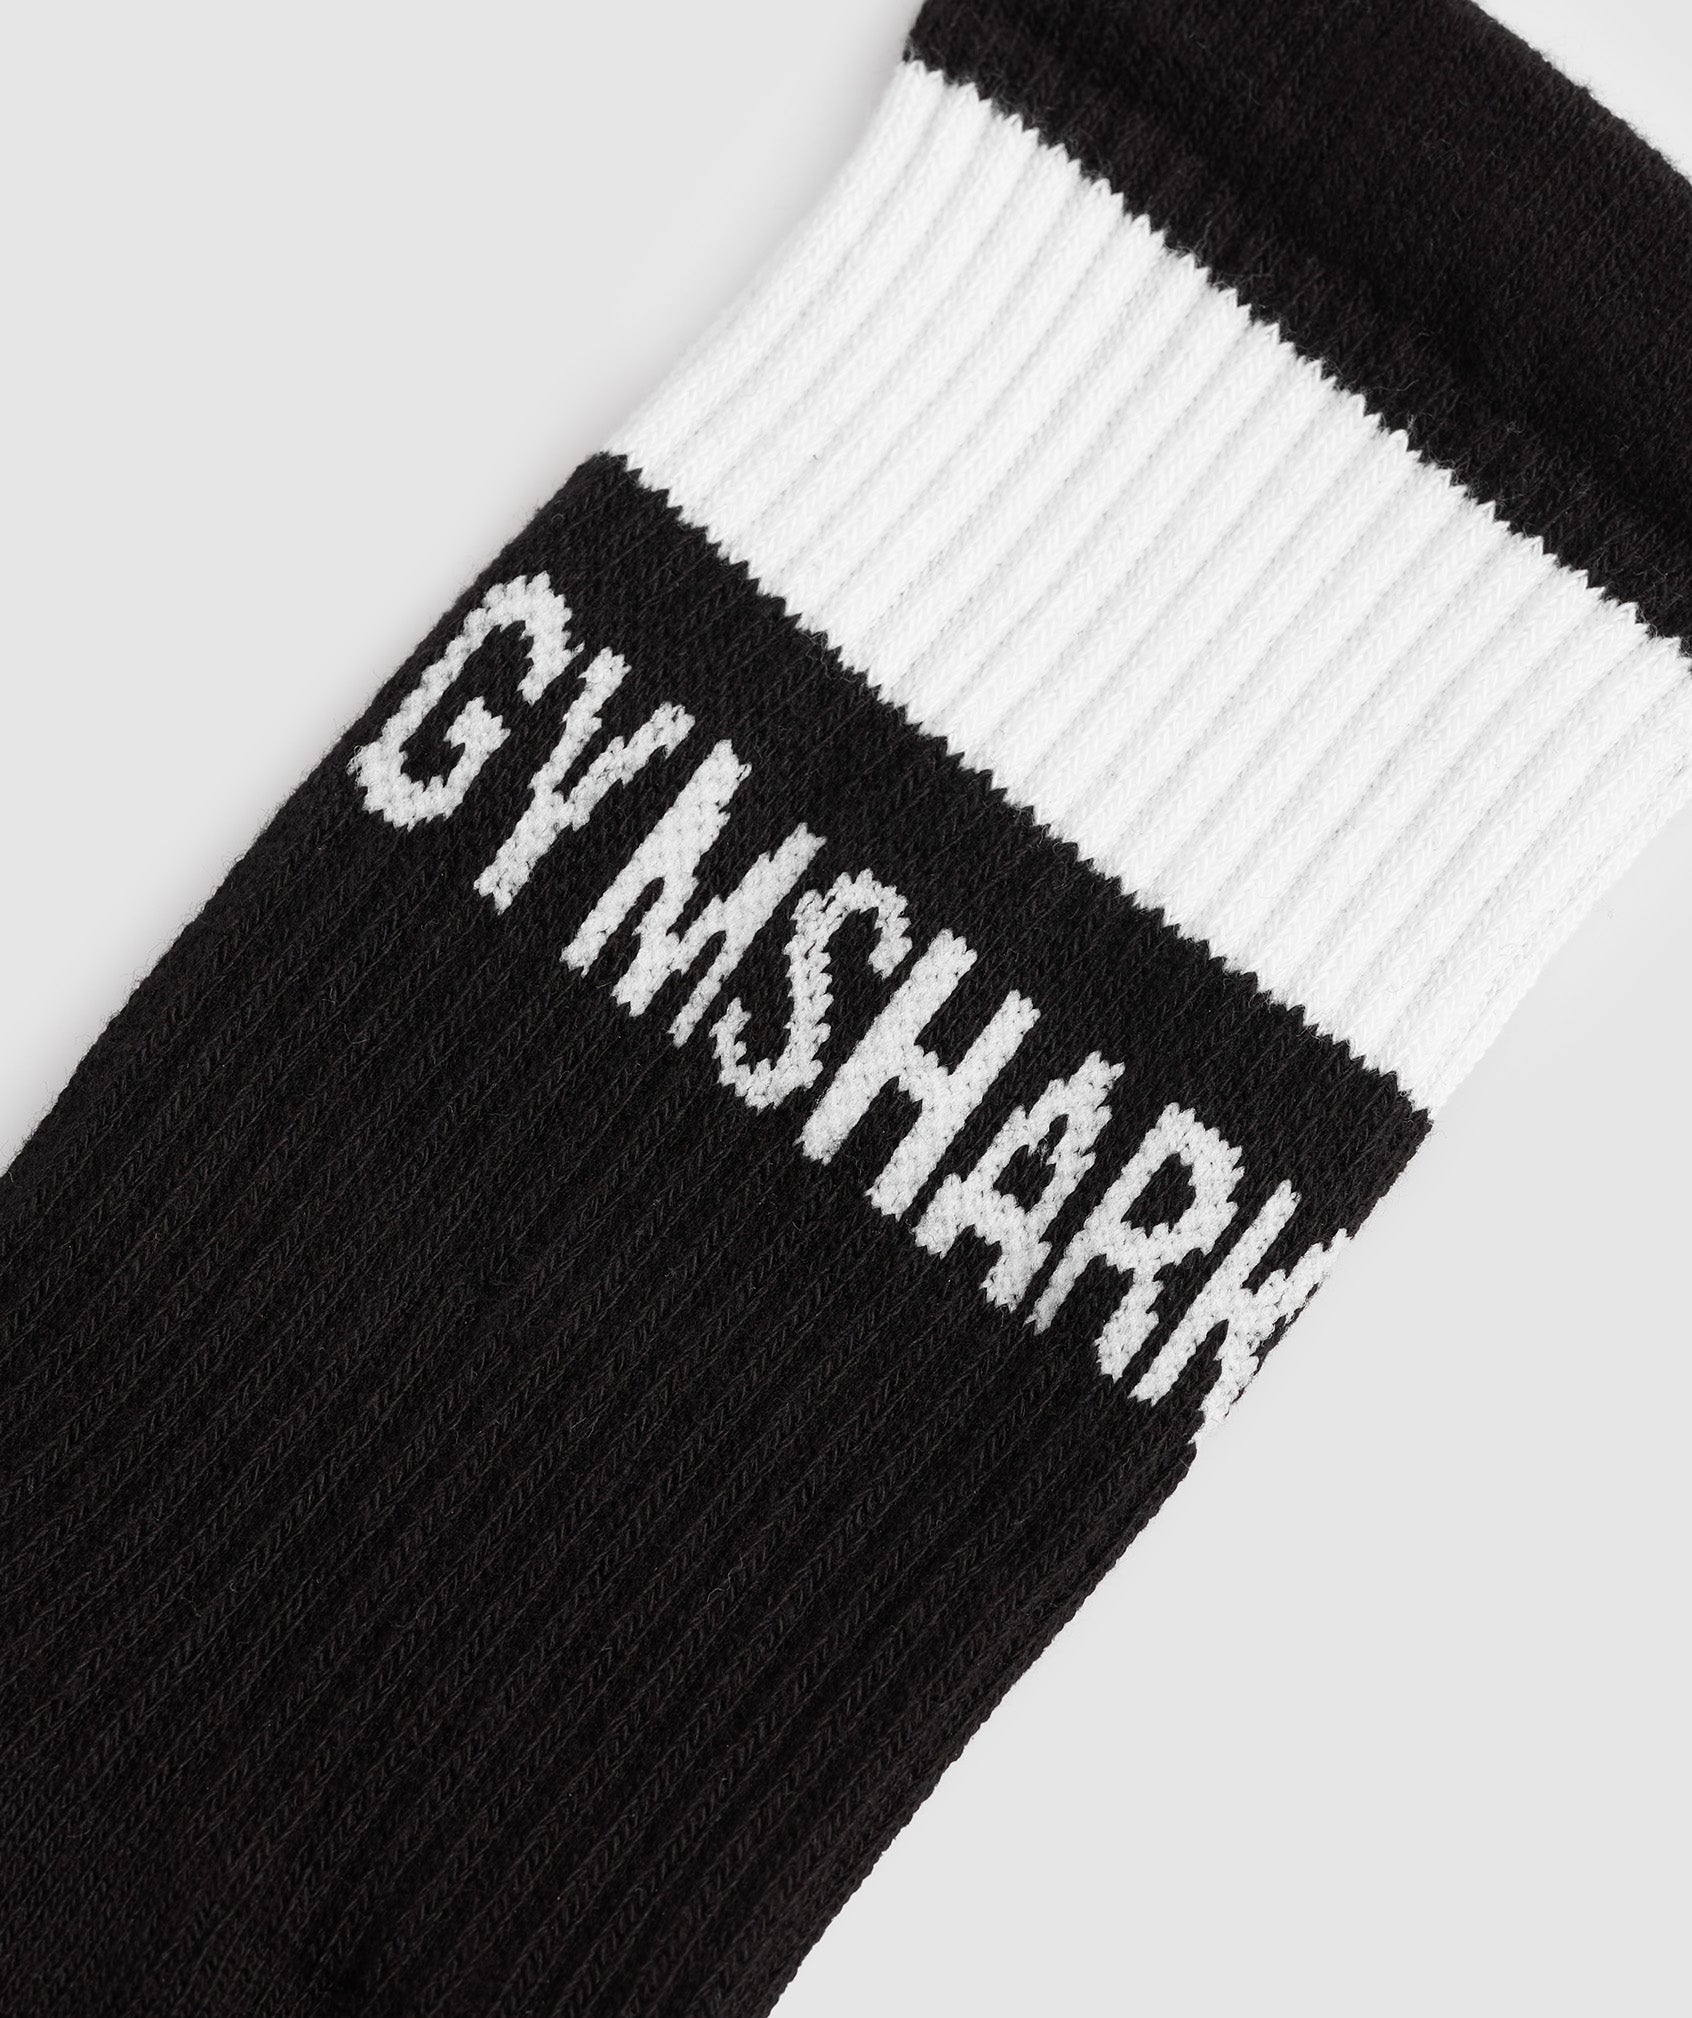 Premium Jacquard Single Socks in Black/White